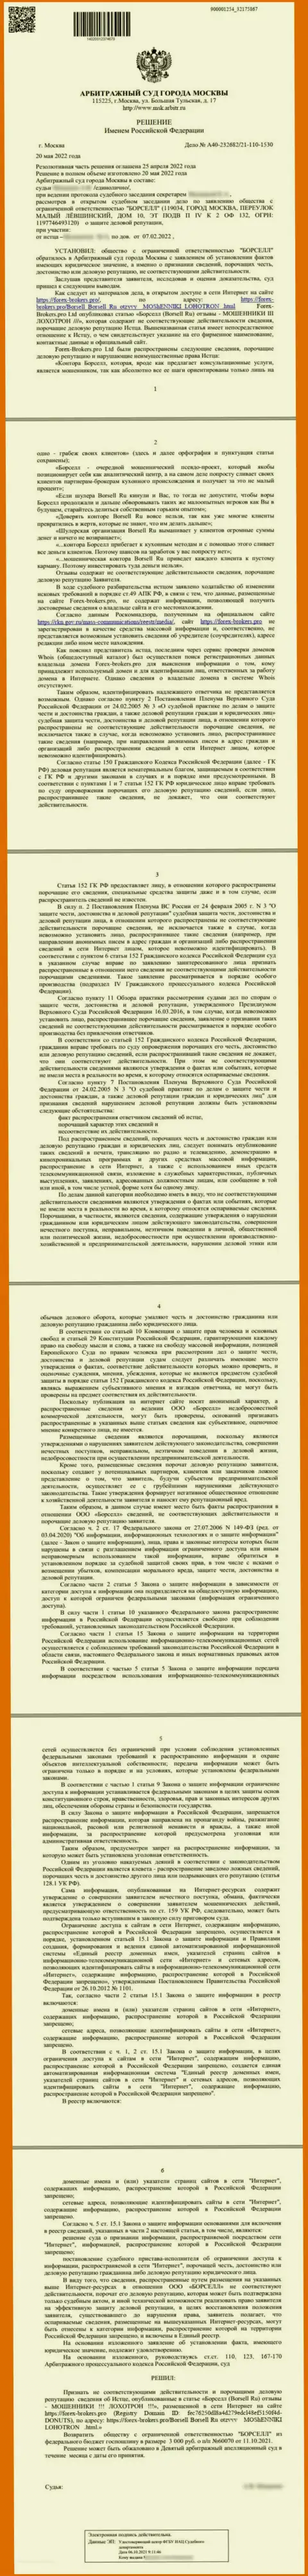 Скрин решения арбитражного суда по исковому заявлению организации Borsell Ru